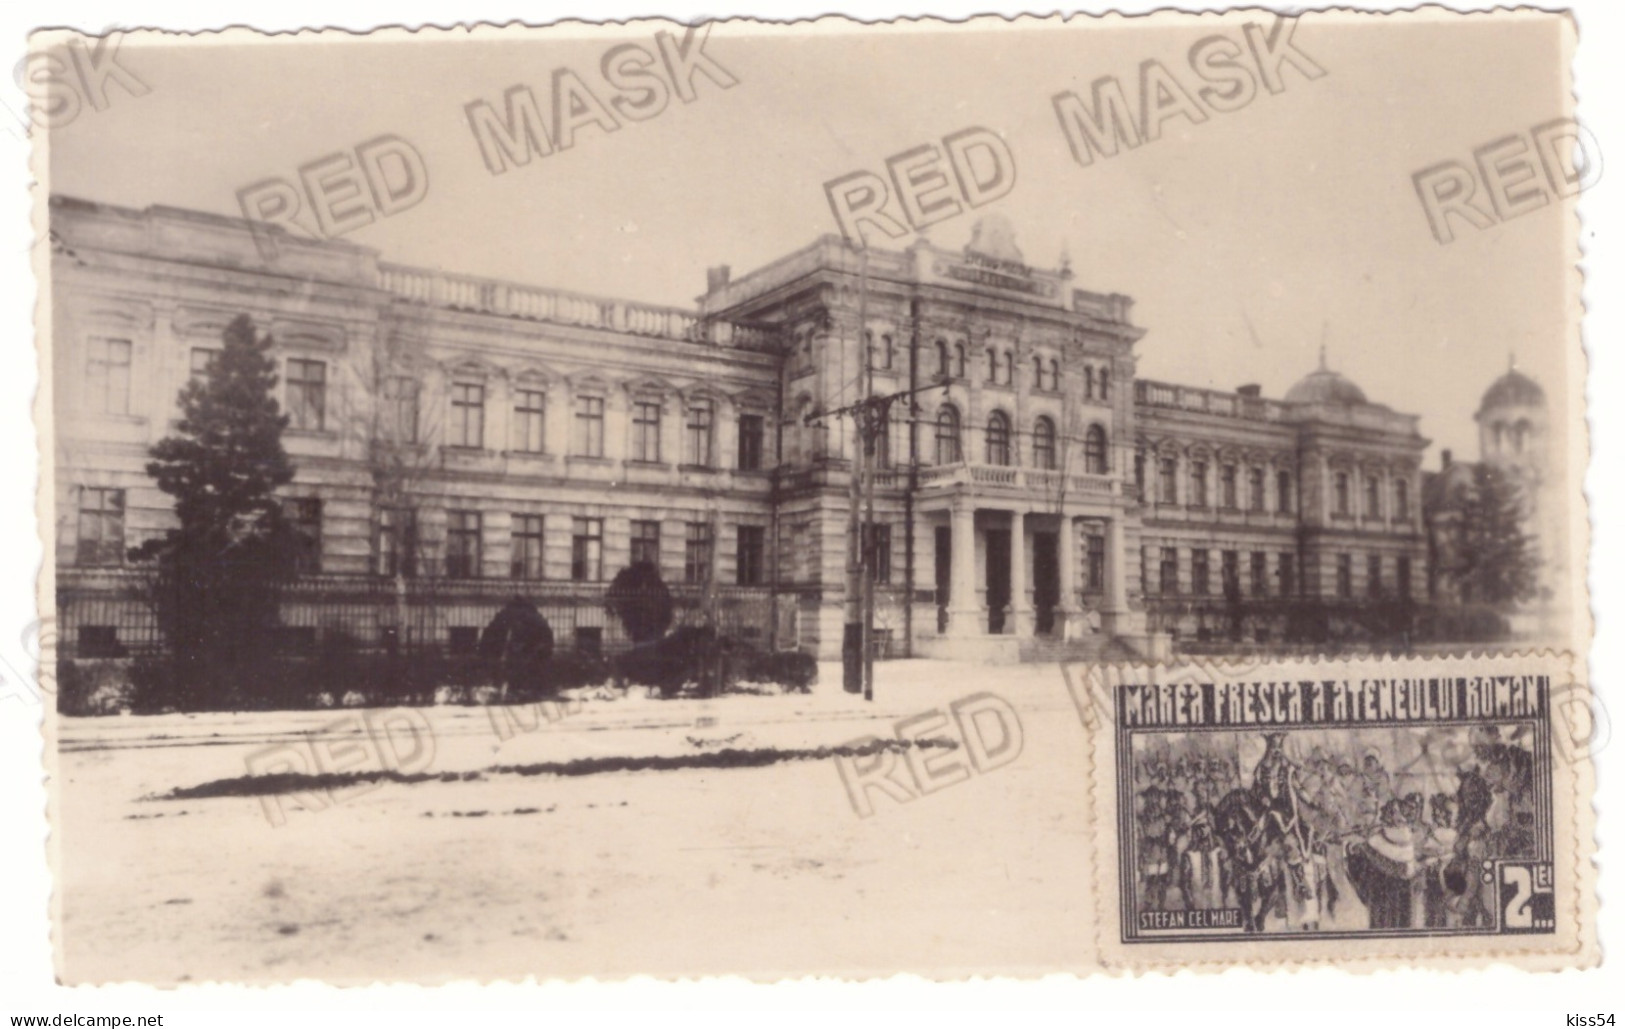 MOL 8 - 21607 CHISINAU, Military School, Moldova - Old Postcard, Real PHOTO - Used - 1936 - Moldavie